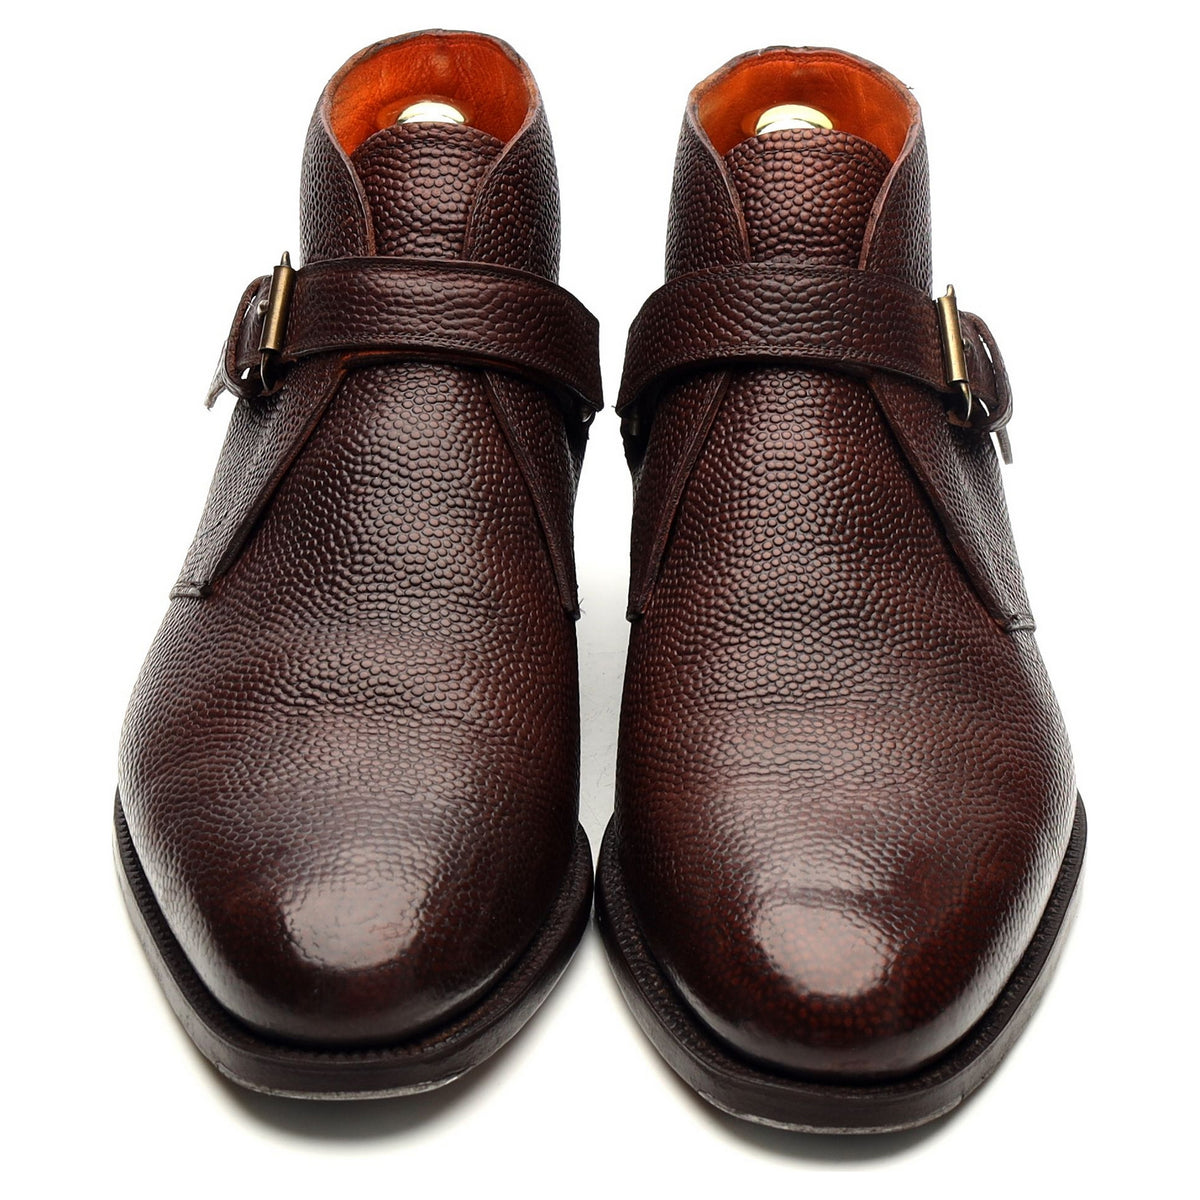 Dark Brown Monk Strap Boots UK 6.5 EU 40.5